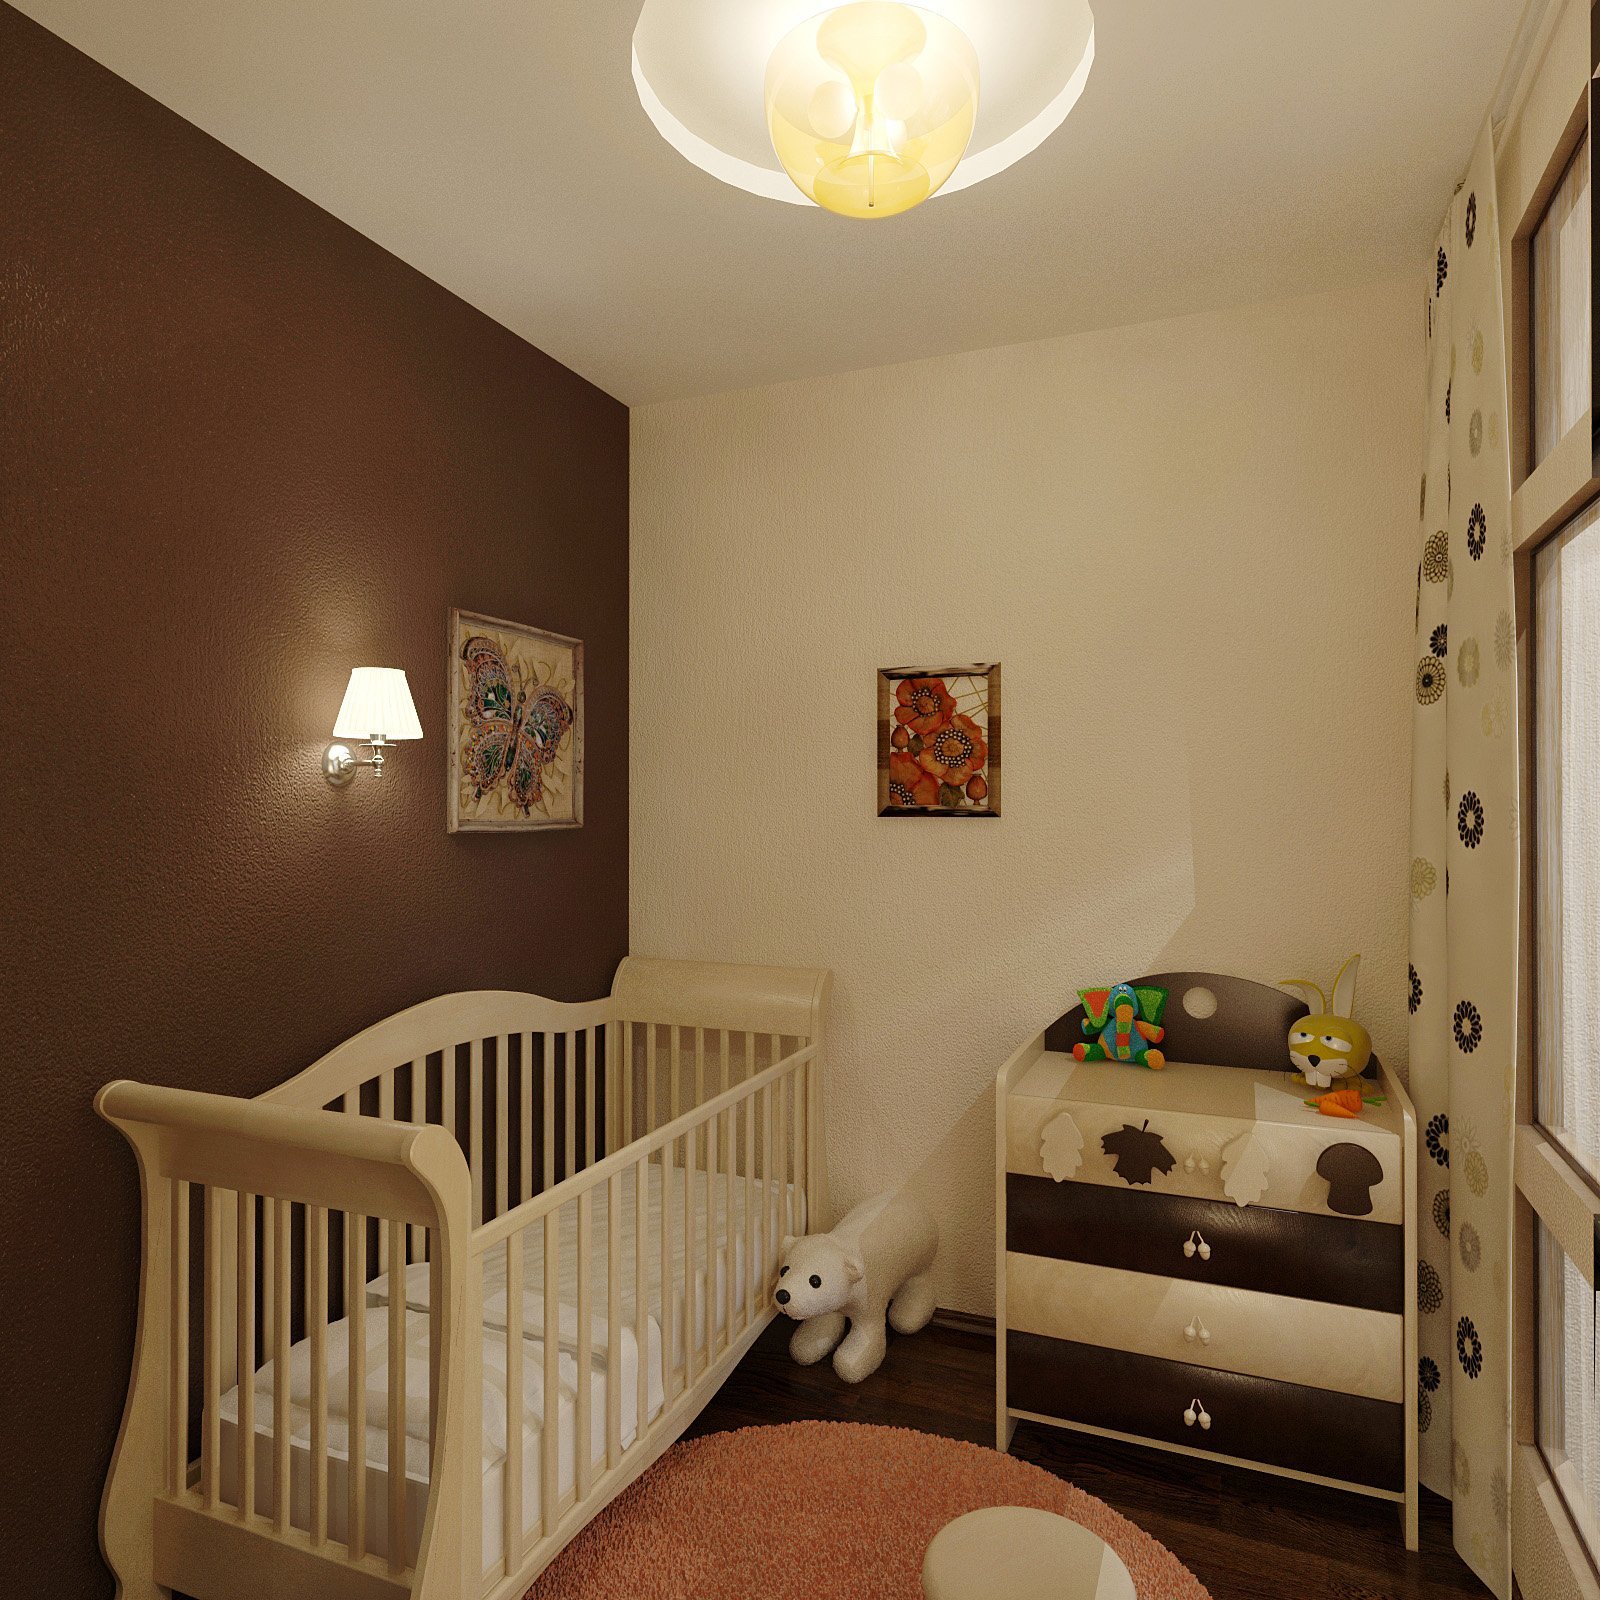 Уголок для новорожденного в однокомнатной квартире